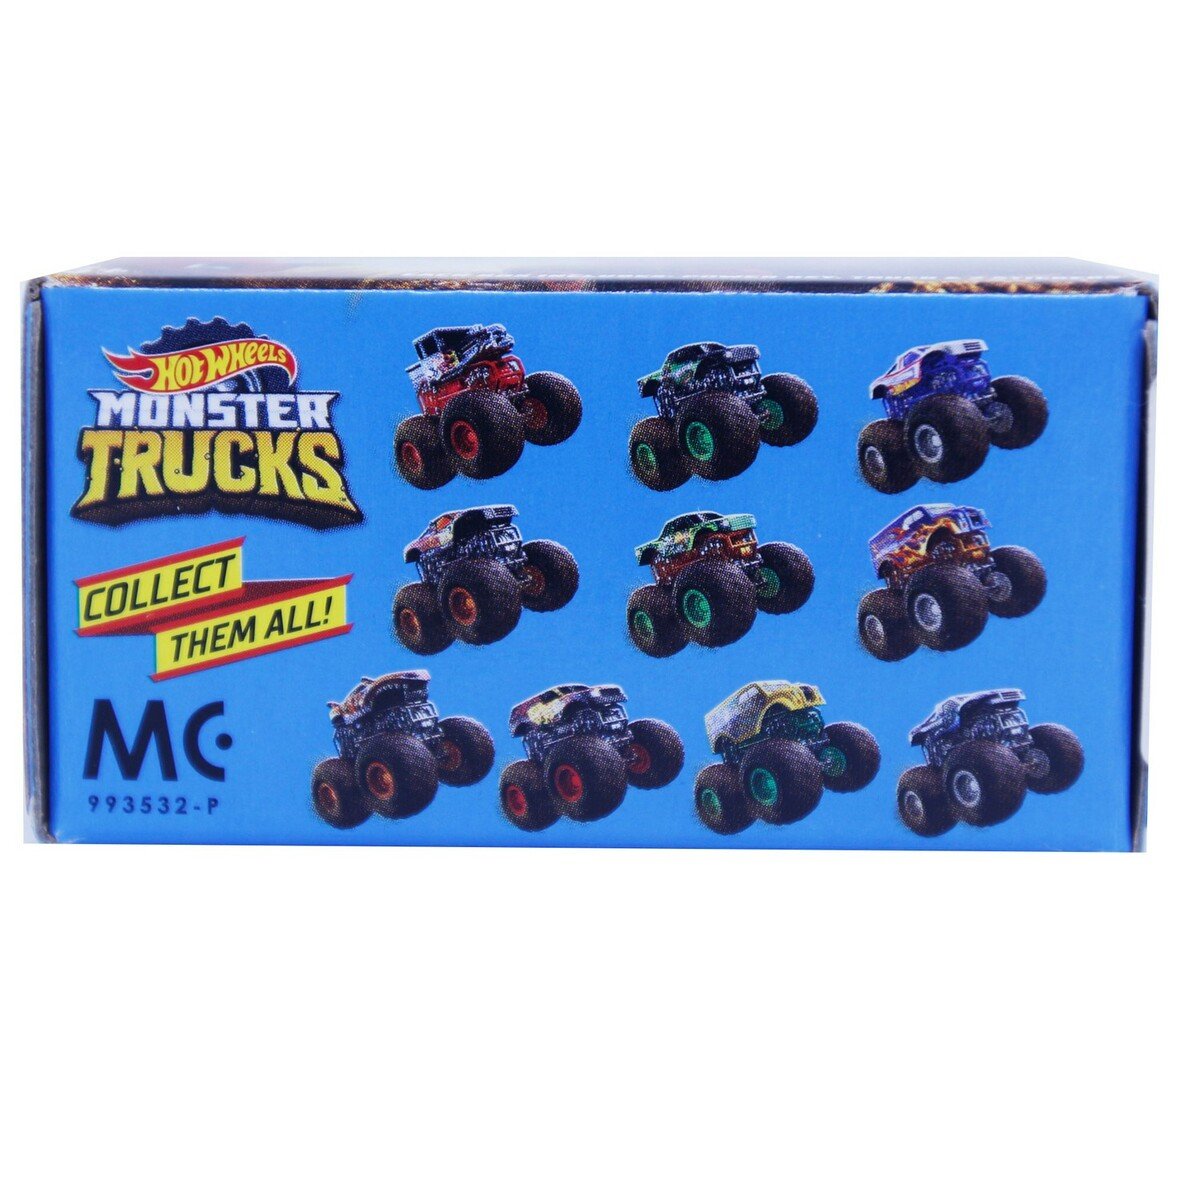 Hot Wheels Monster Trucks  FYJ64